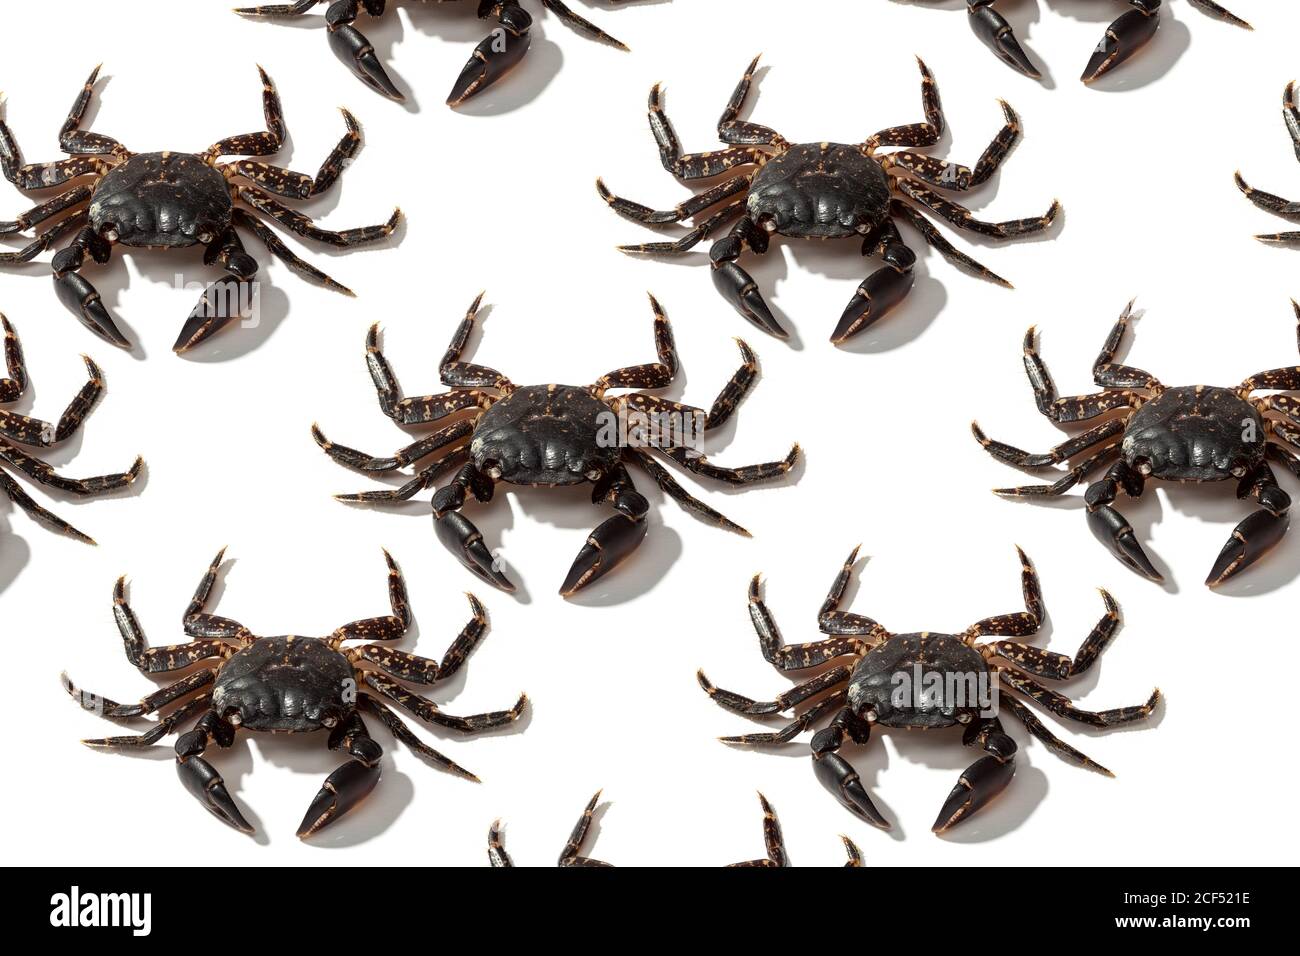 Desde arriba composición creativa de grandes cangrejos marrones locos fondo blanco Foto de stock